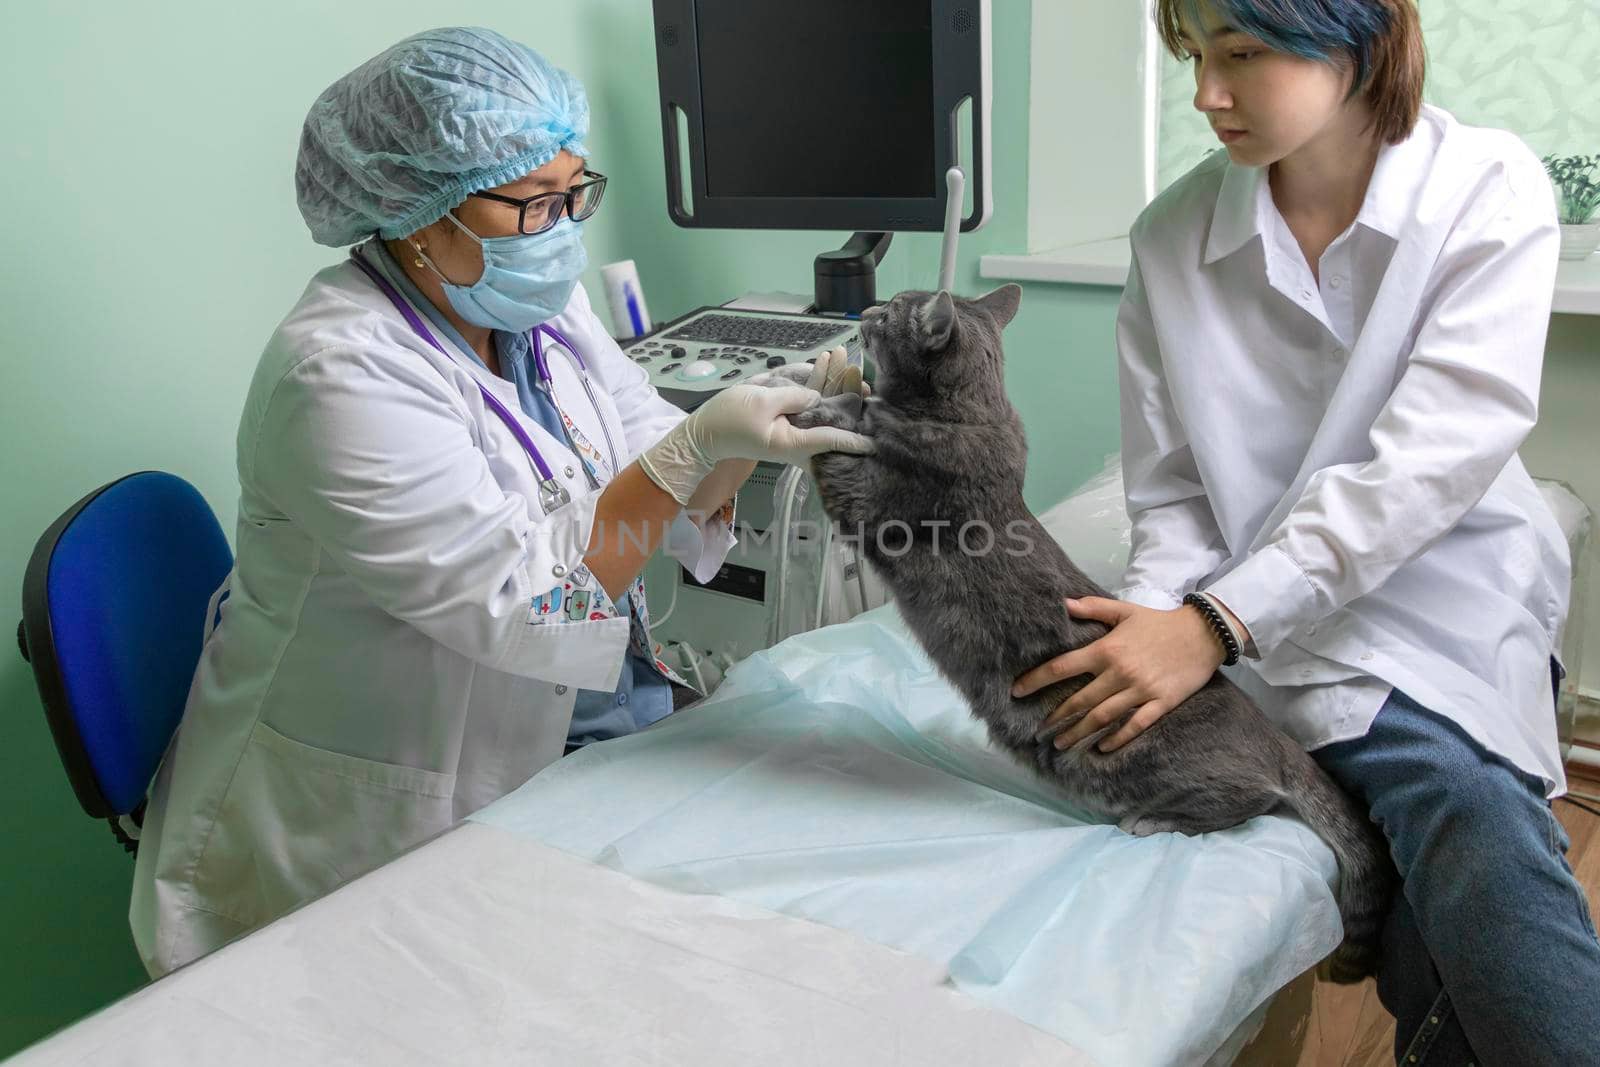 examination of a cat in a veterinary clinic. Woman veterinarian examines a sick gray cat by Leoschka